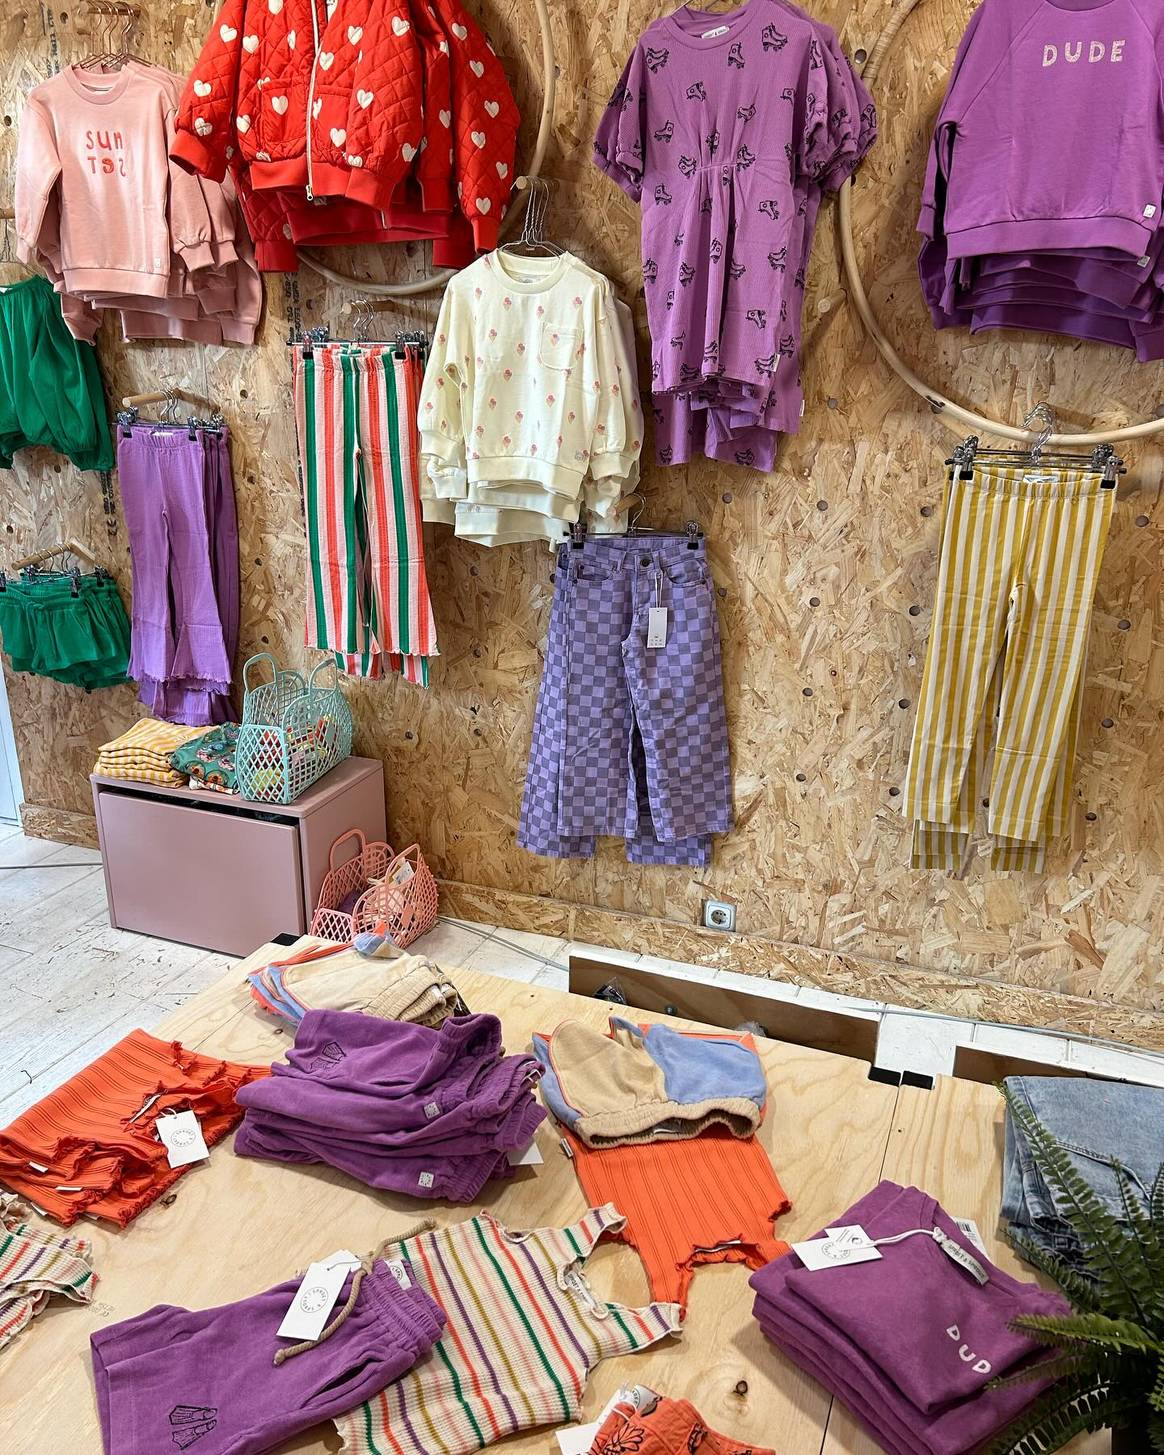 Tutte Belle verkoopt kleurrijke baby- en kinderkleding van
verschillende merken en sinds kort ook dameskleding.